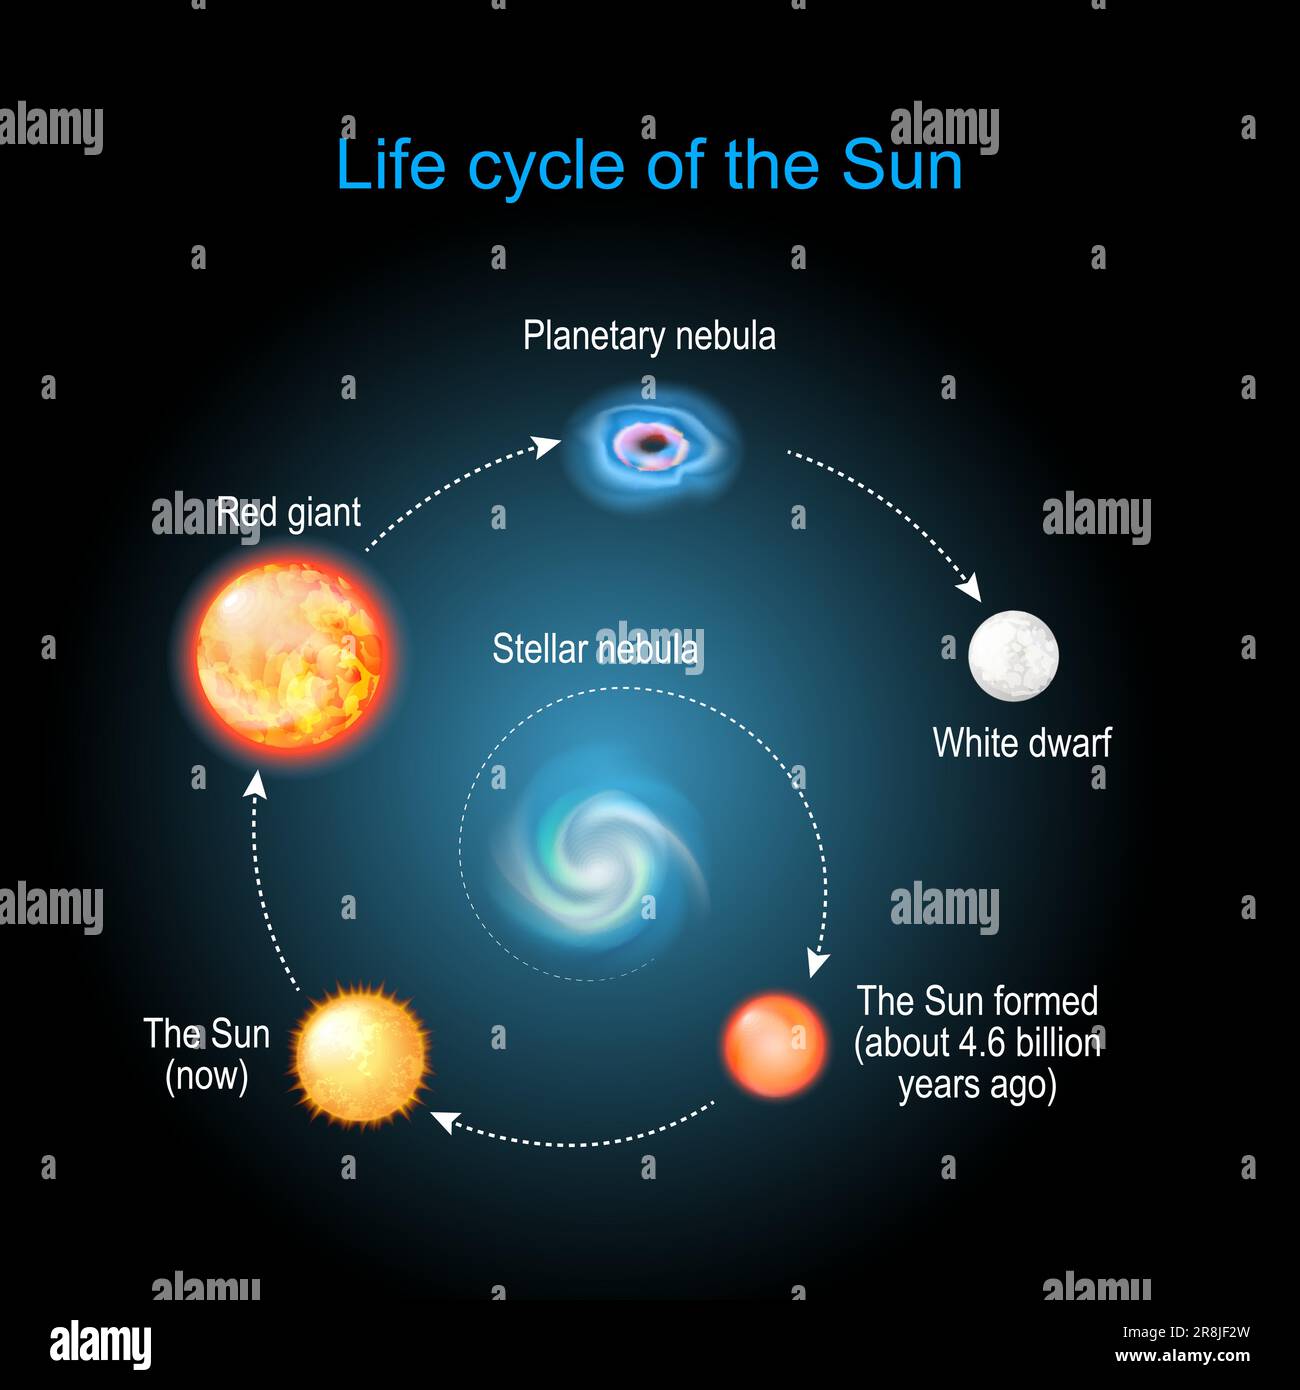 Cycle de vie du Soleil de la nébuleuse stellaire au géant rouge, à la nébuleuse planétaire et aux nains blancs. Évolution stellaire. infographie. Diagramme vectoriel Illustration de Vecteur